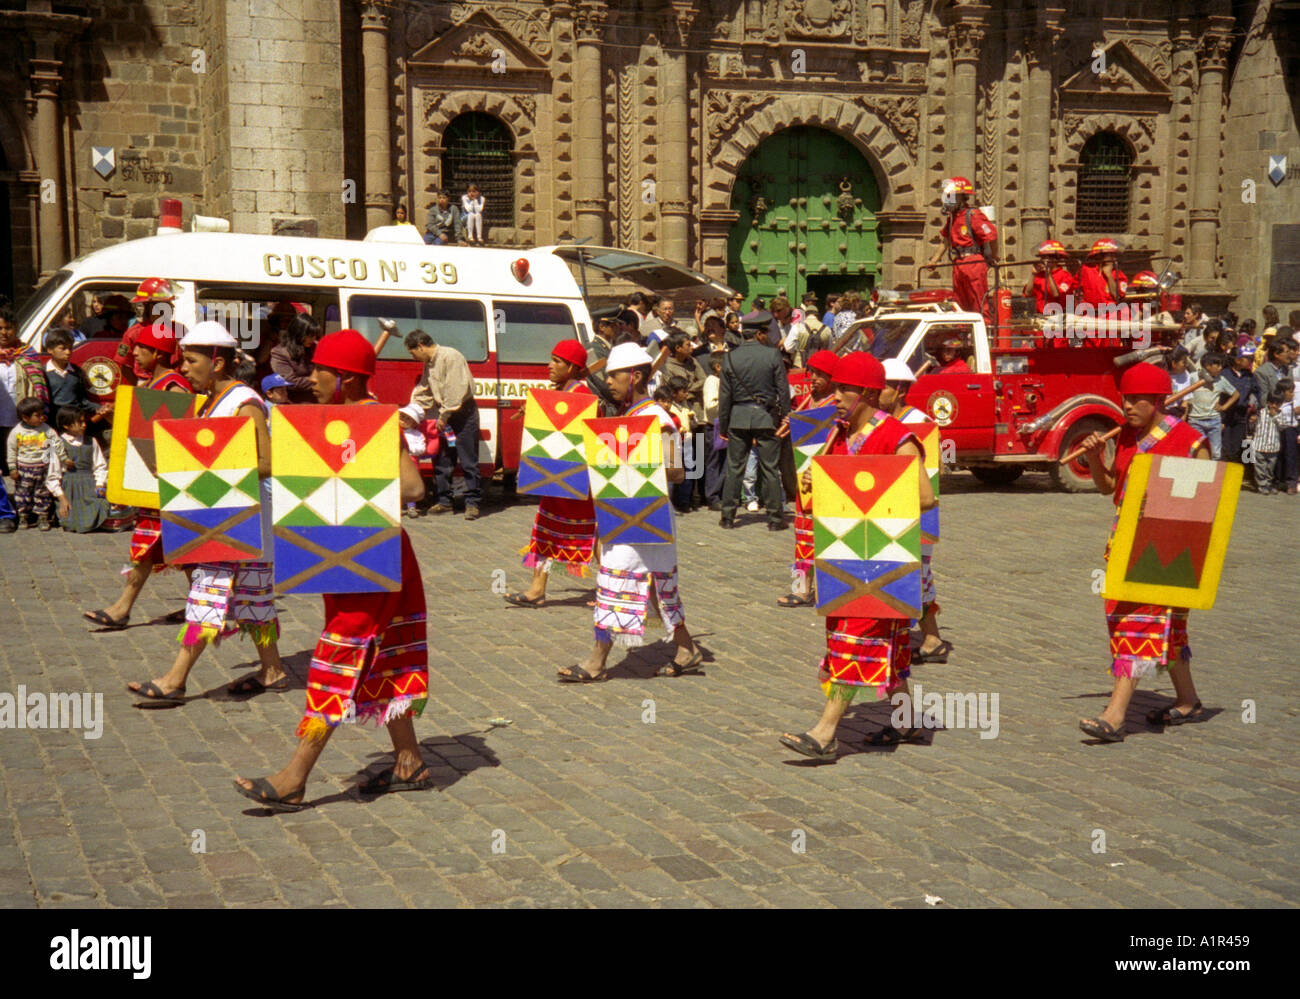 Street Parade square public extérieur affichage puissance anonyme sans visage homme hommes garçon même clone Cuzco Pérou Amérique Latine du Sud Banque D'Images